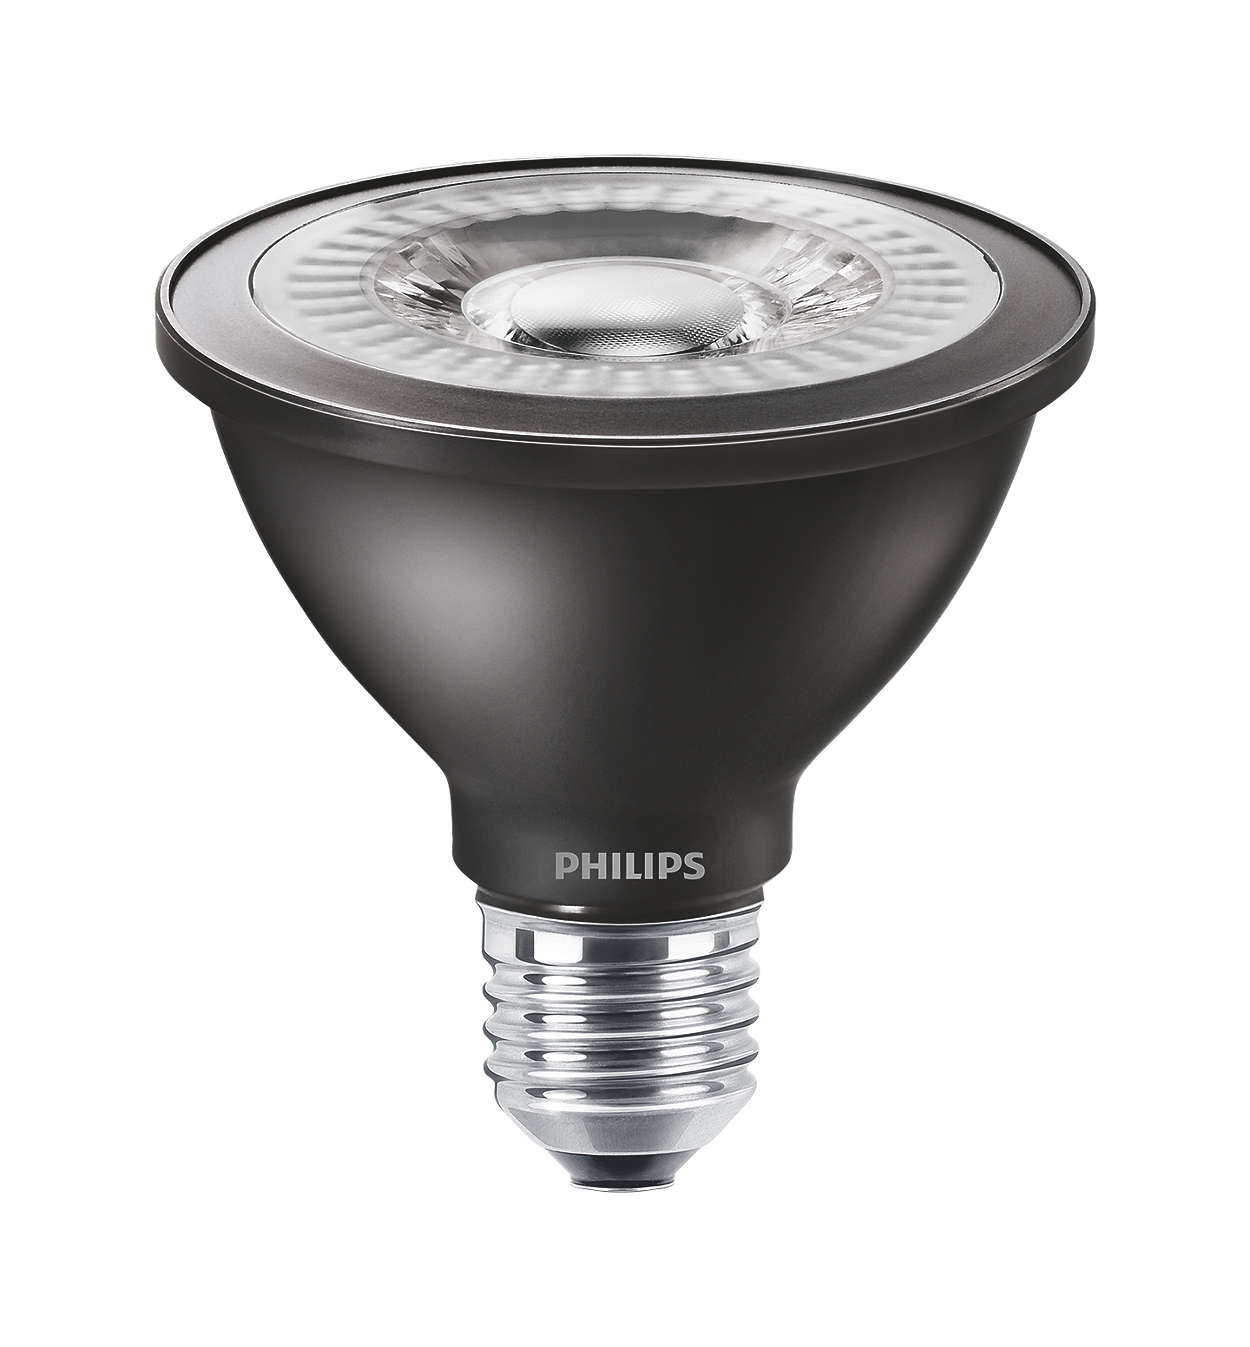 Philips MASTER LEDspot D 8.5-75W 827 PAR30S 25D